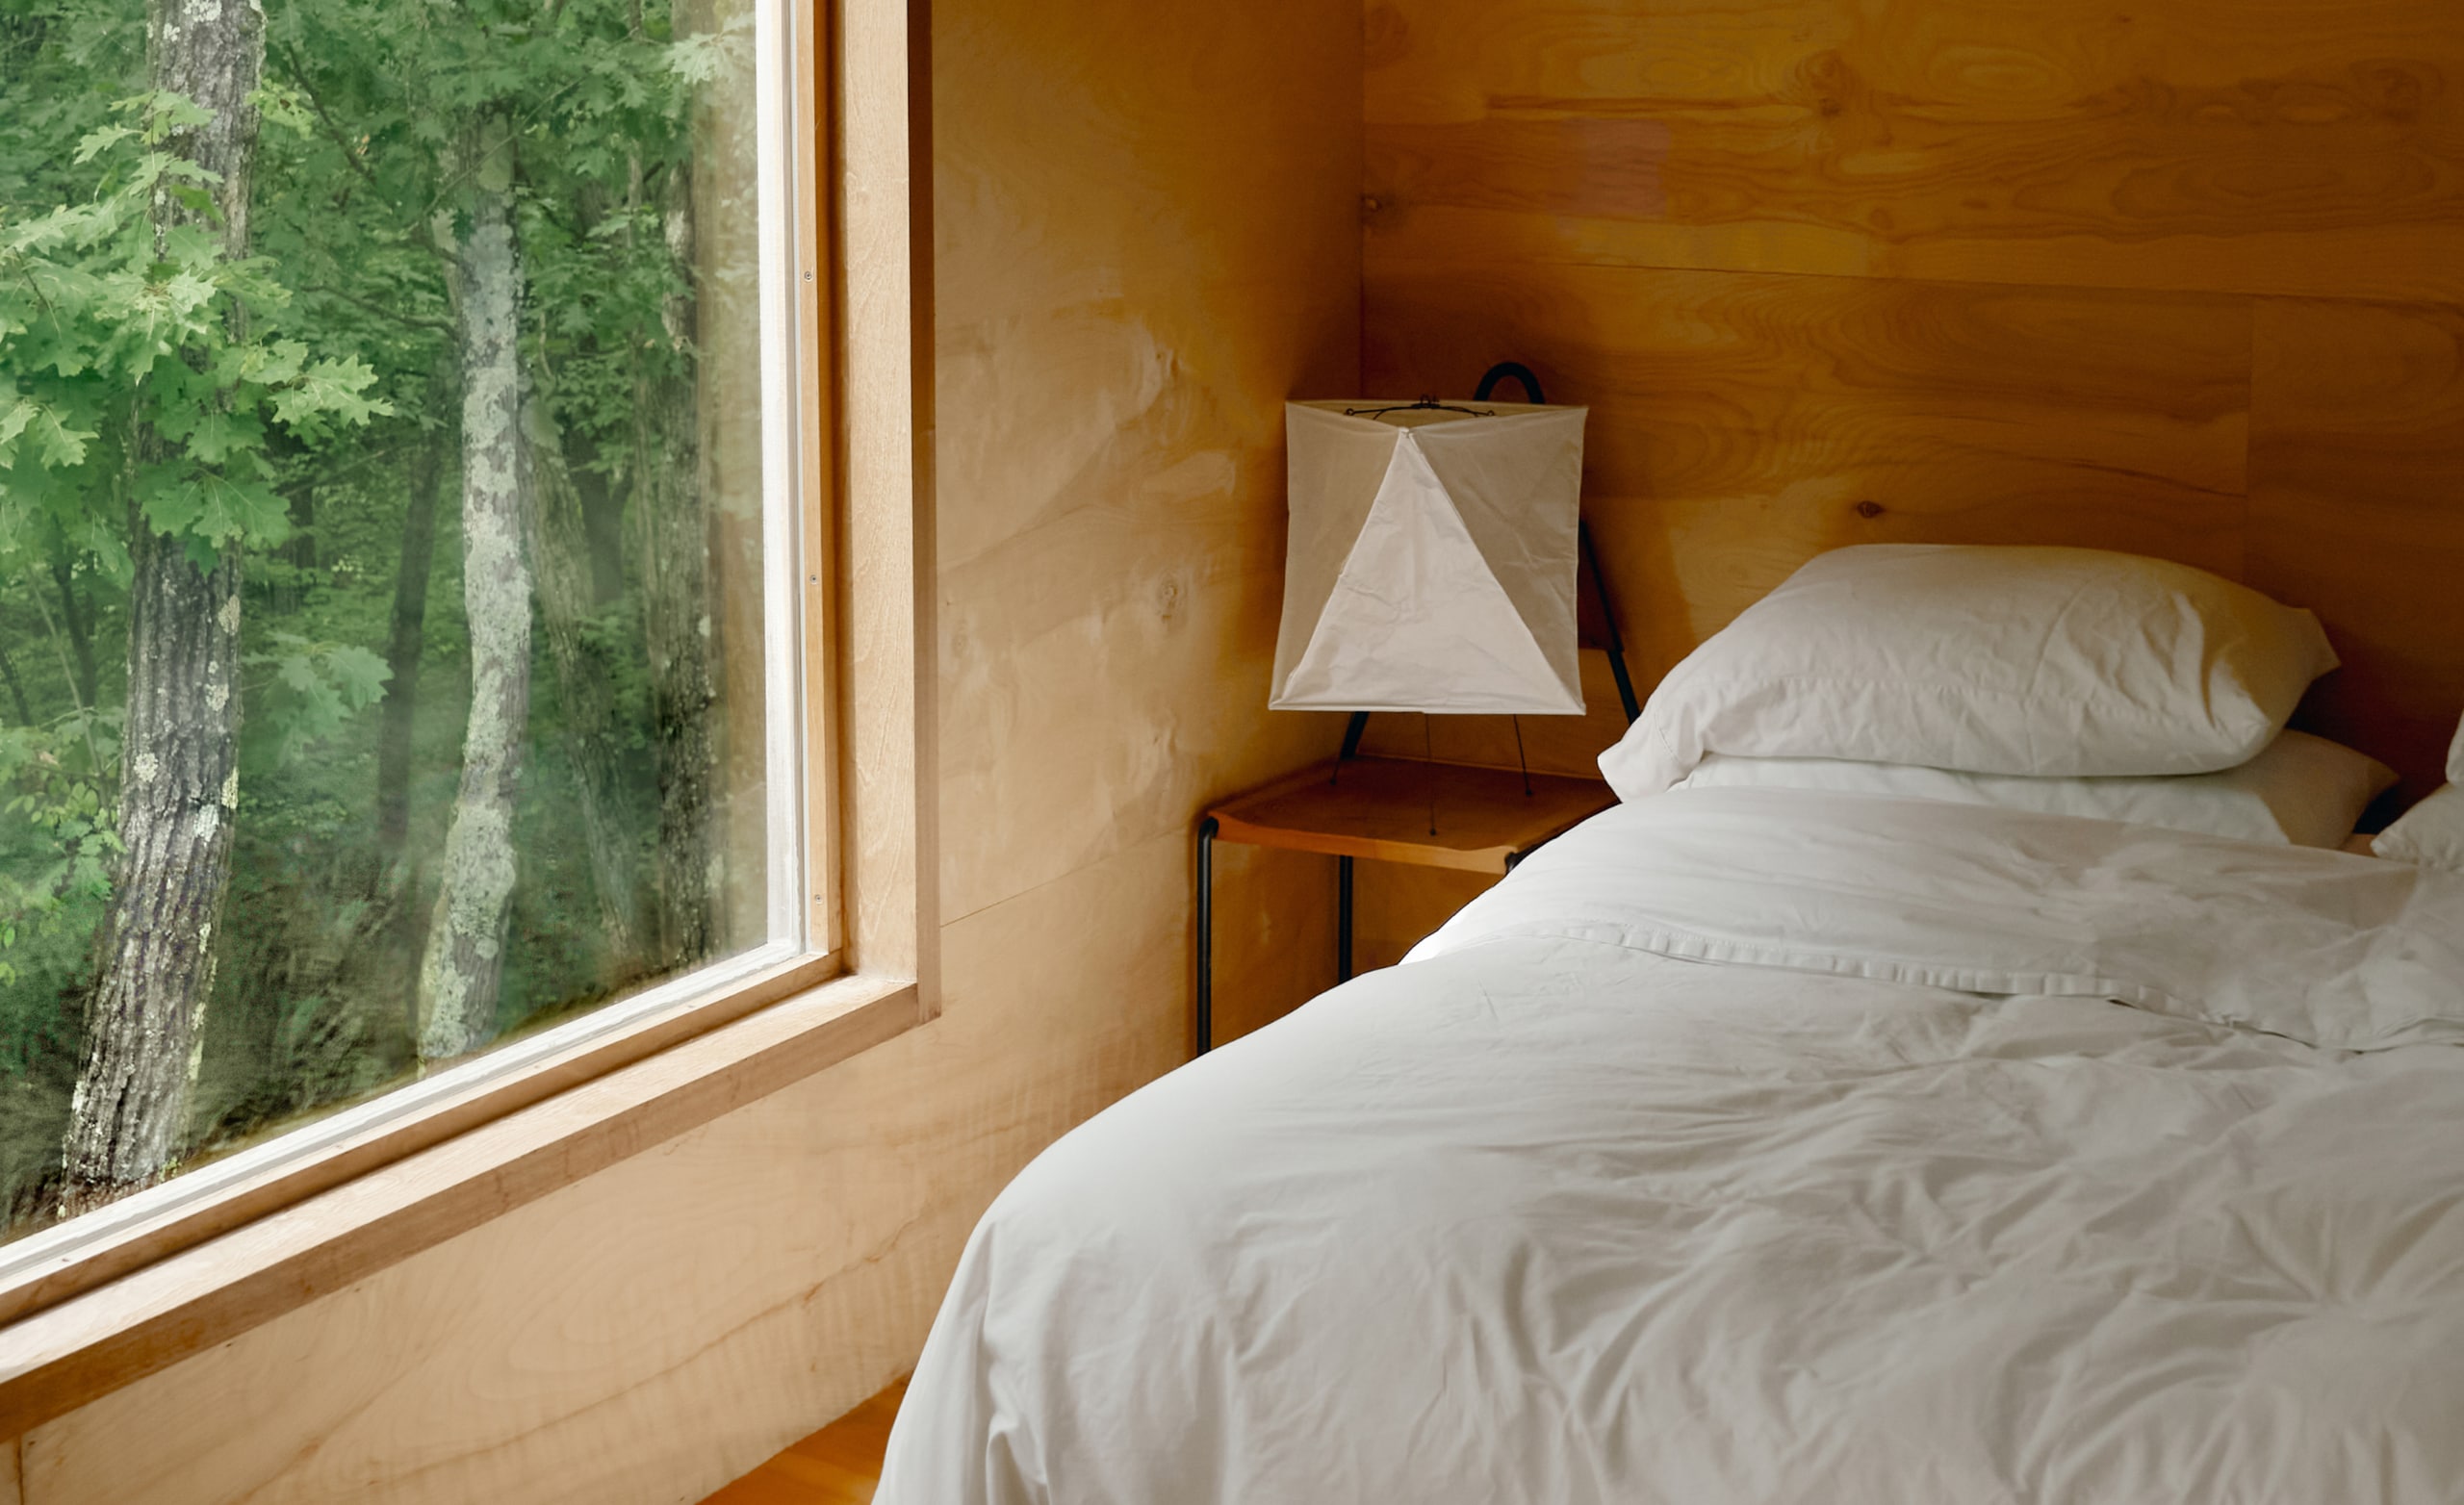 Een slaapkamer met een schoon opgemaakt bed met witte lakens, en een groot raam dat uitkijkt op bomen.